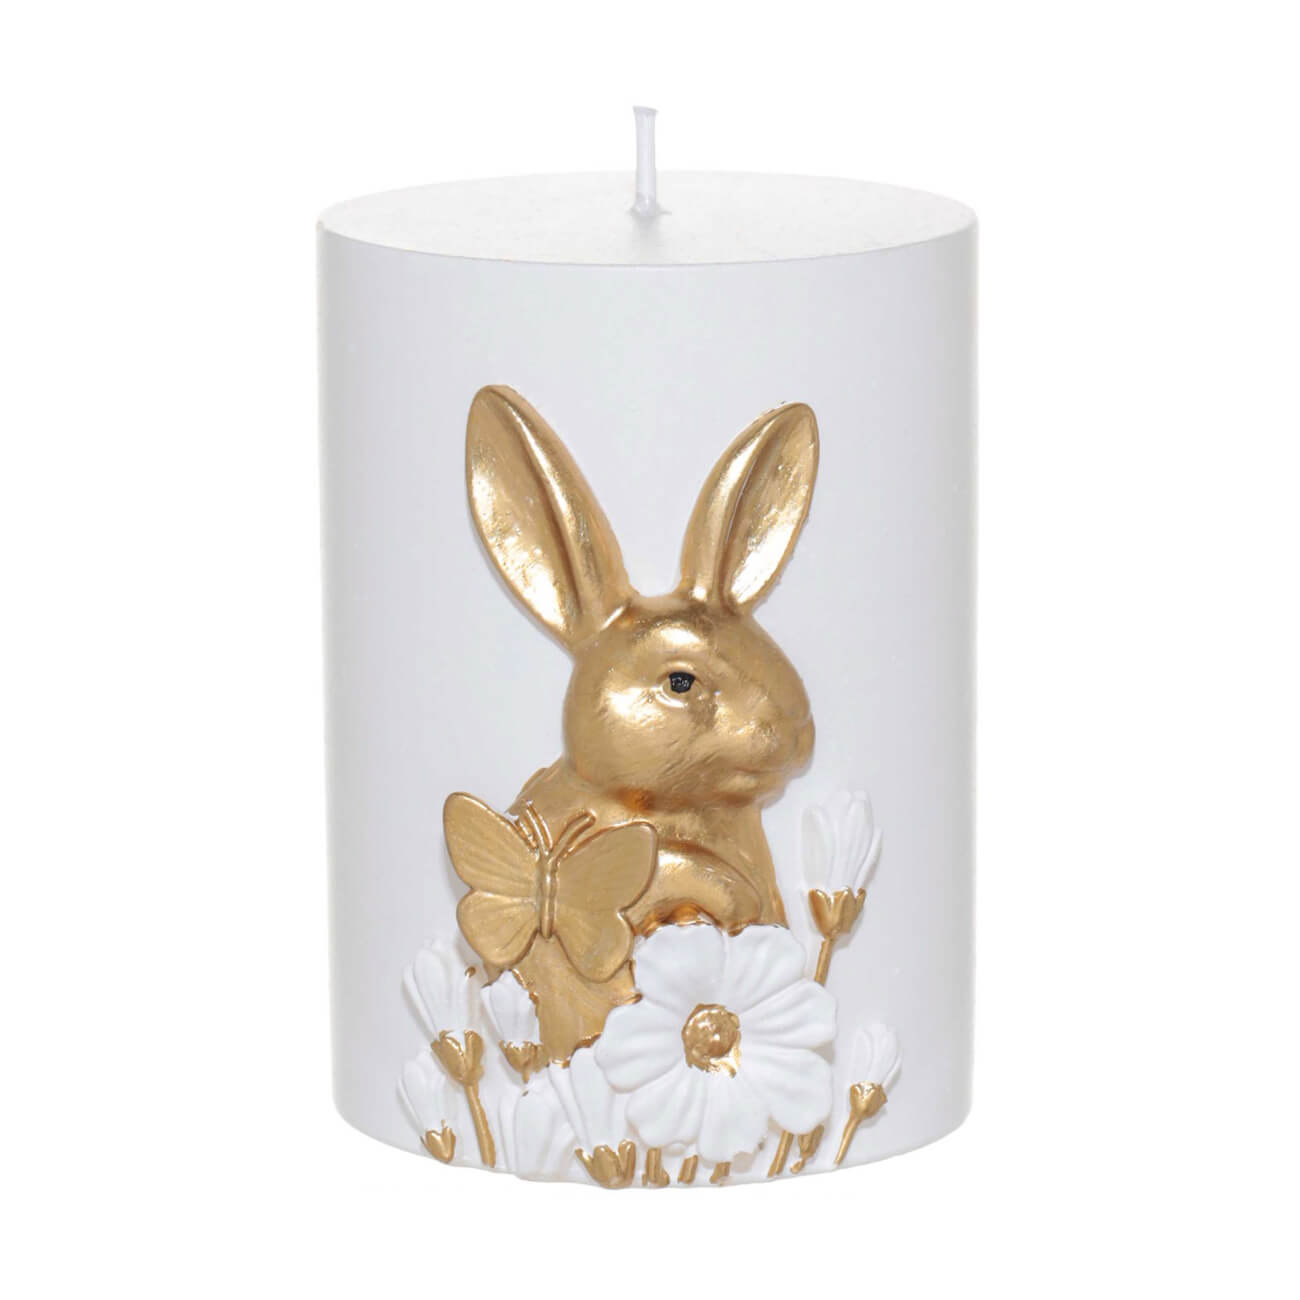 подставка для яйца 12 см полирезин бело золотистая кролик с тележкой easter gold Свеча, 9 см, цилиндрическая, бело-золотистая, Кролик с бабочкой, Easter gold